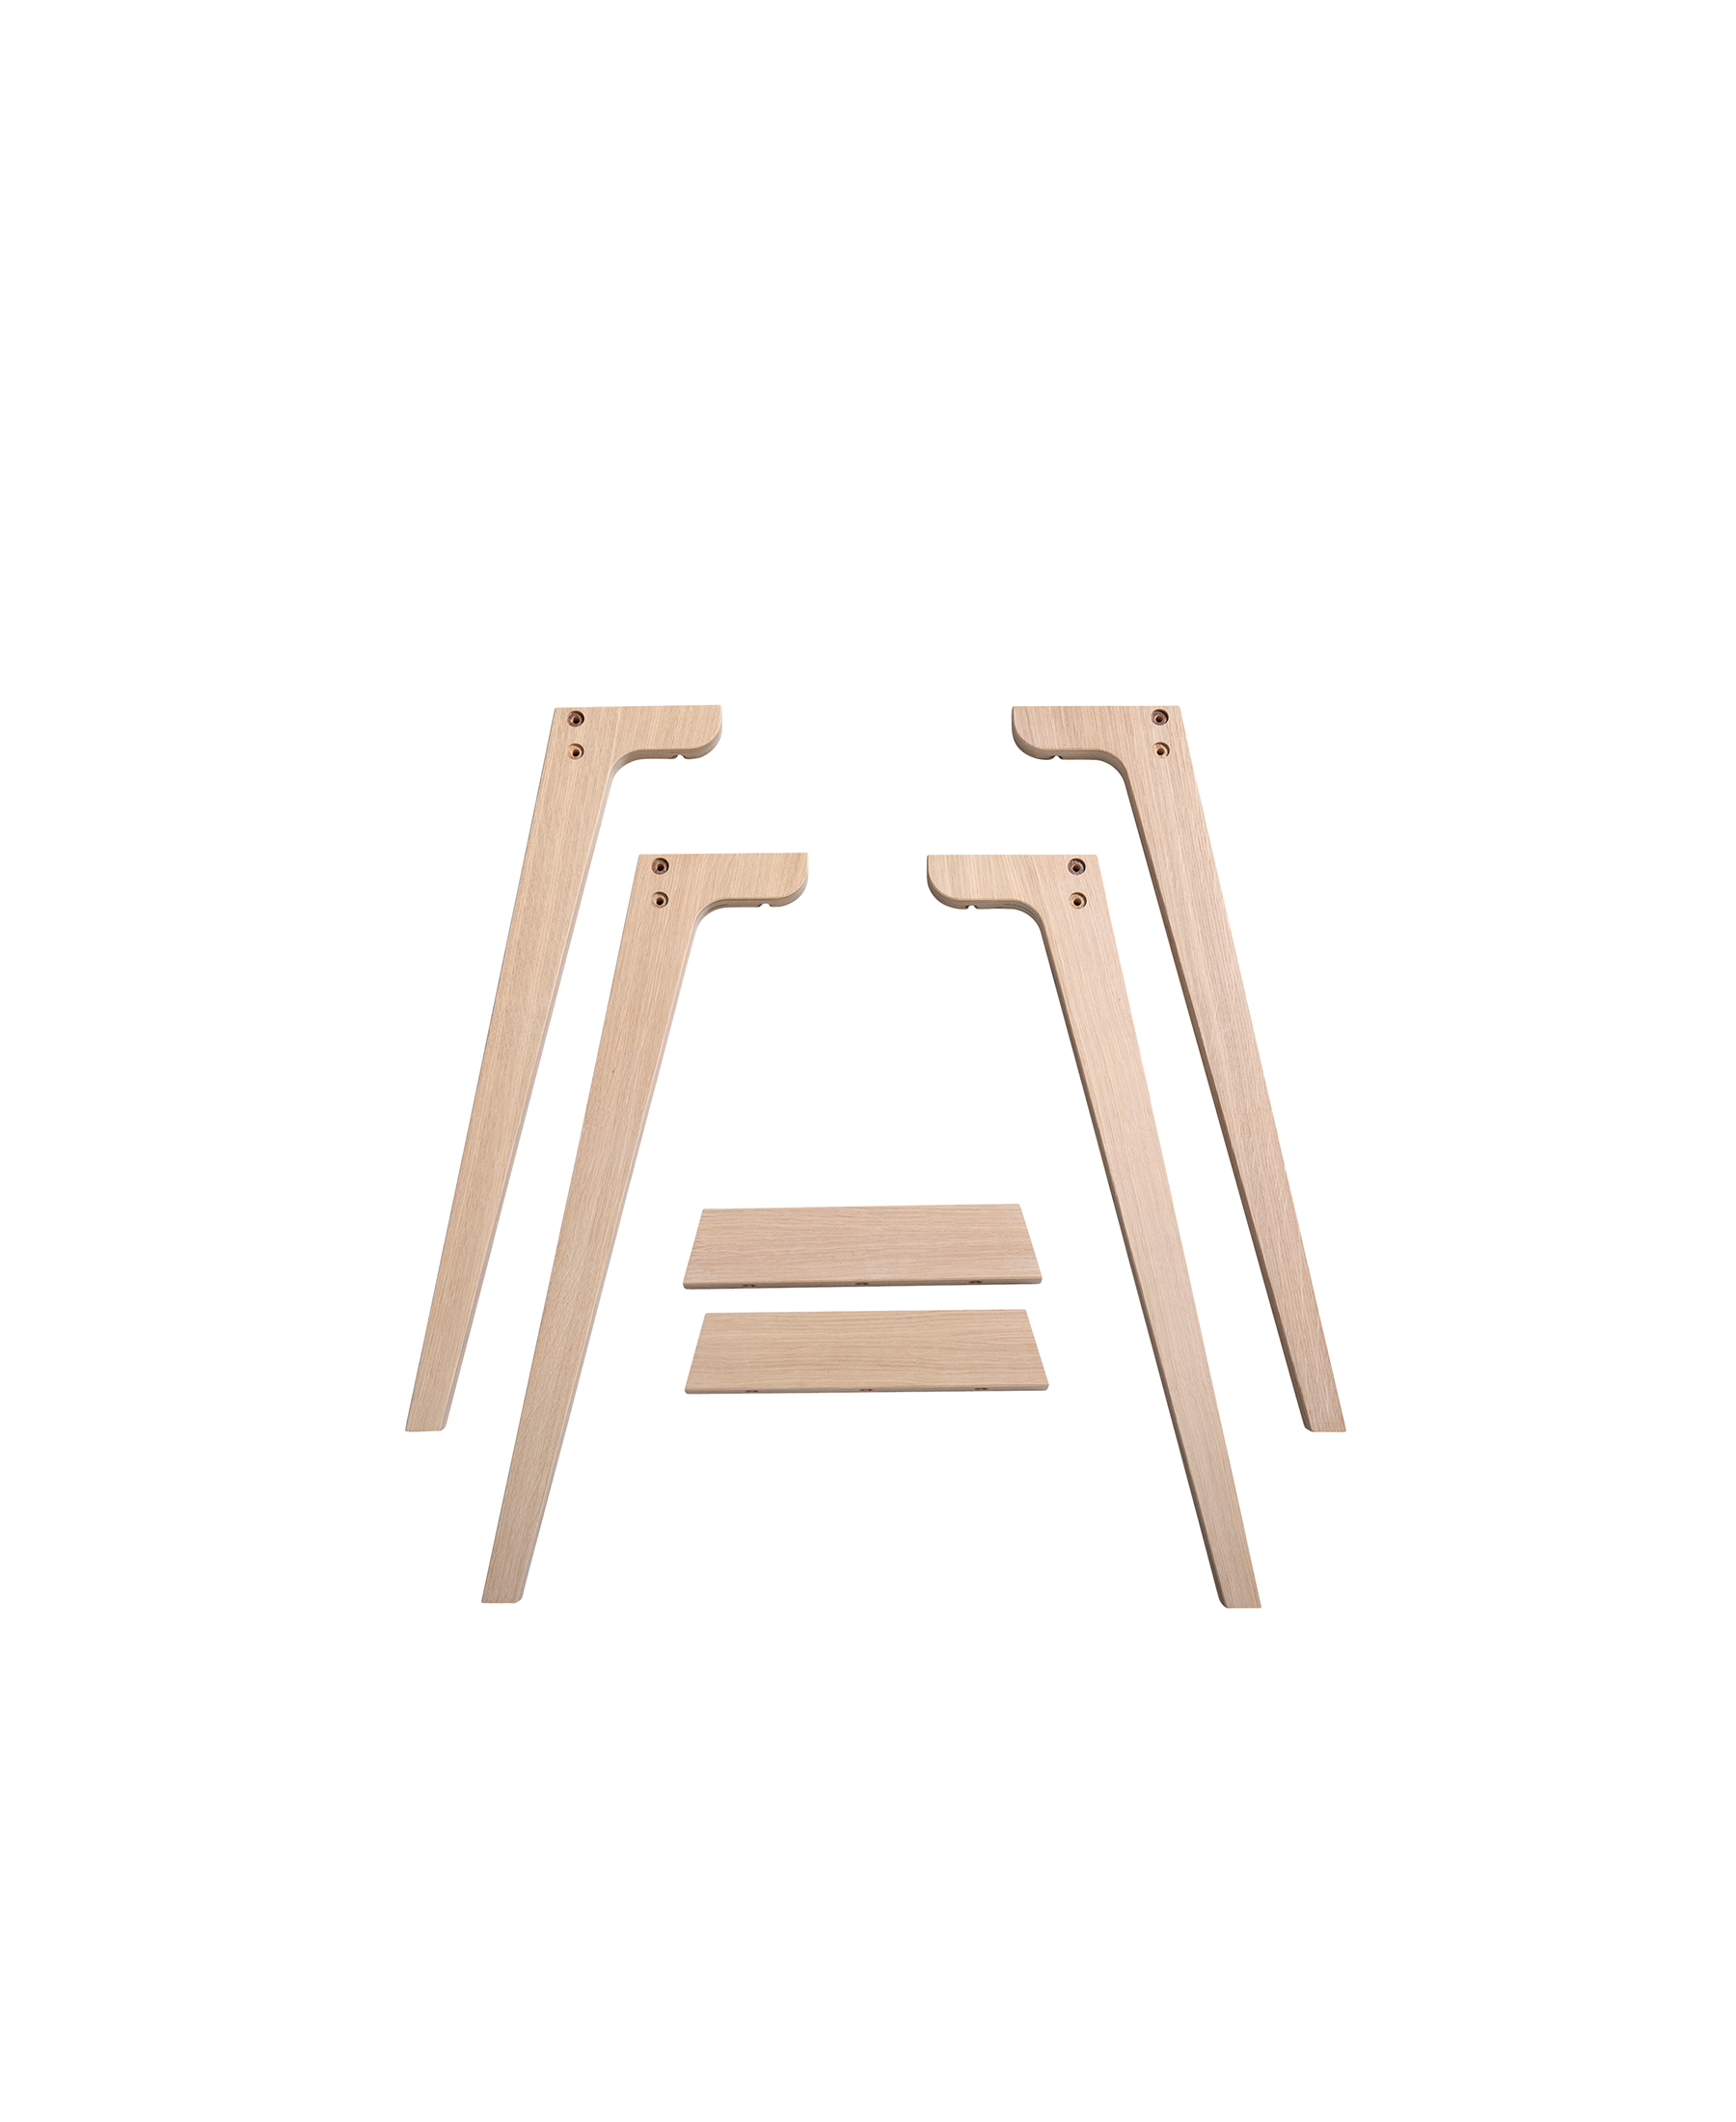 Junior (66cm) legs for wood desk by Oliver Furniture